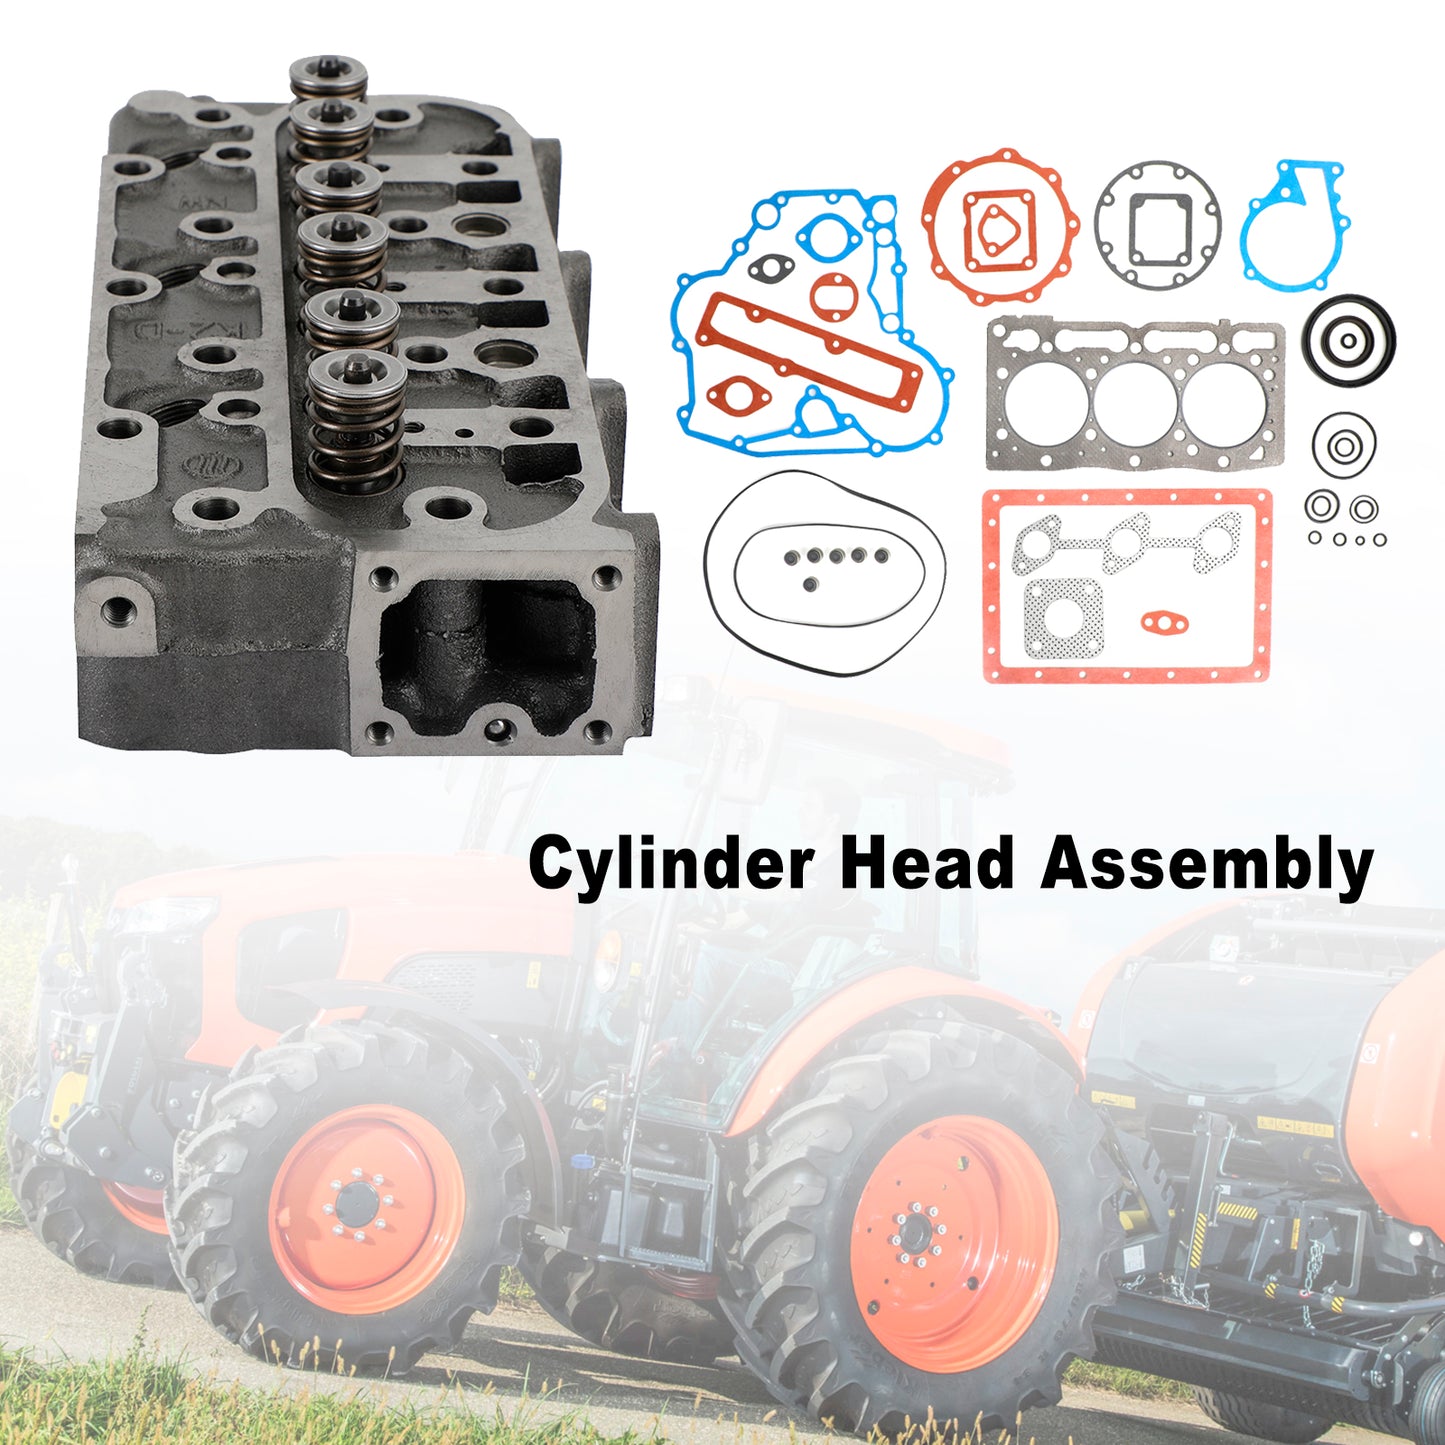 Complete Cylinder Head With Valve Spring & Gasket Kit Fit For Kubota D1105 RTV1100